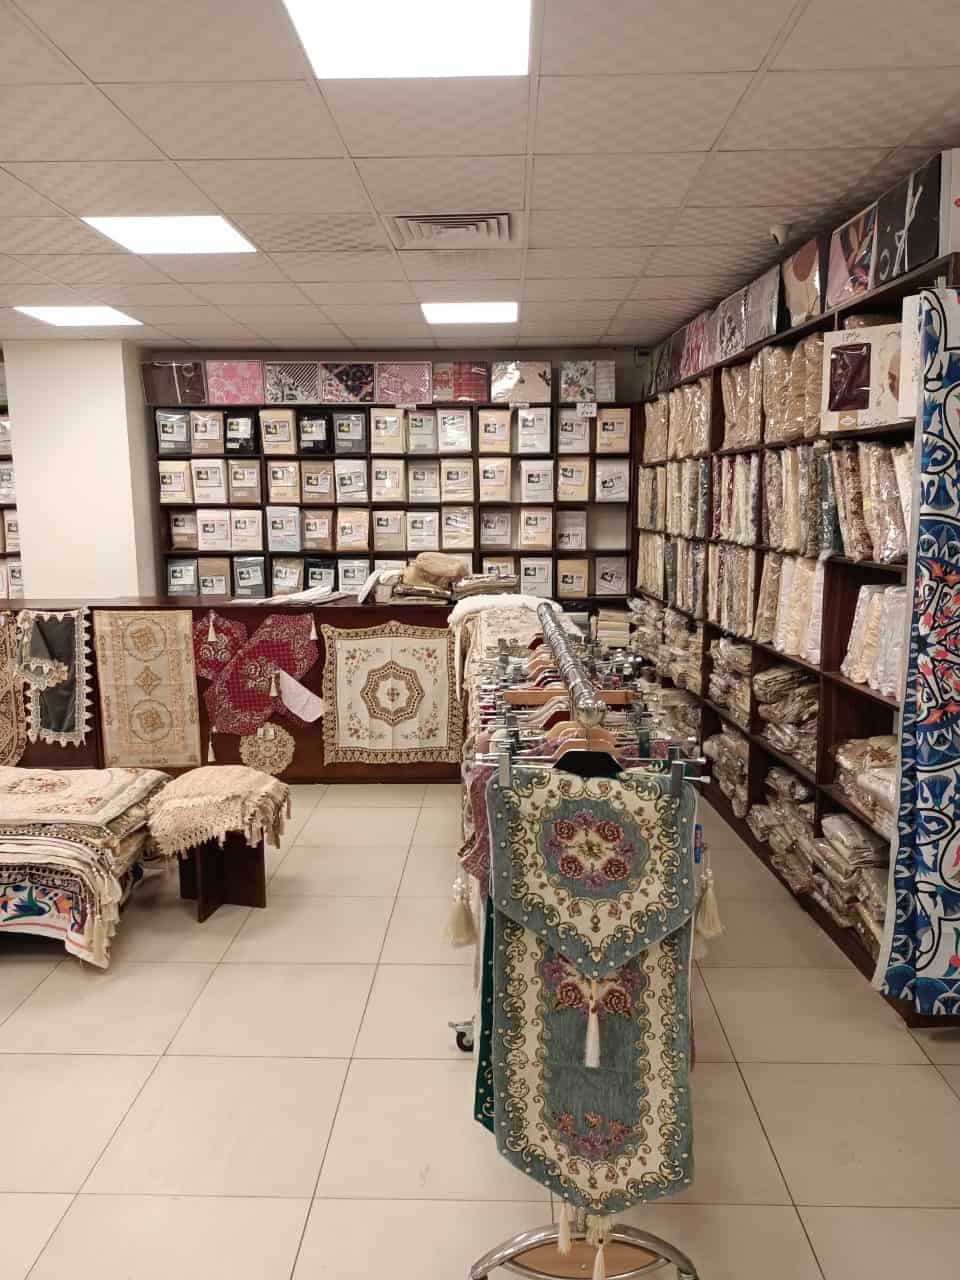 Produtos à venda no interior da loja Flower Cotton, em Gizé.